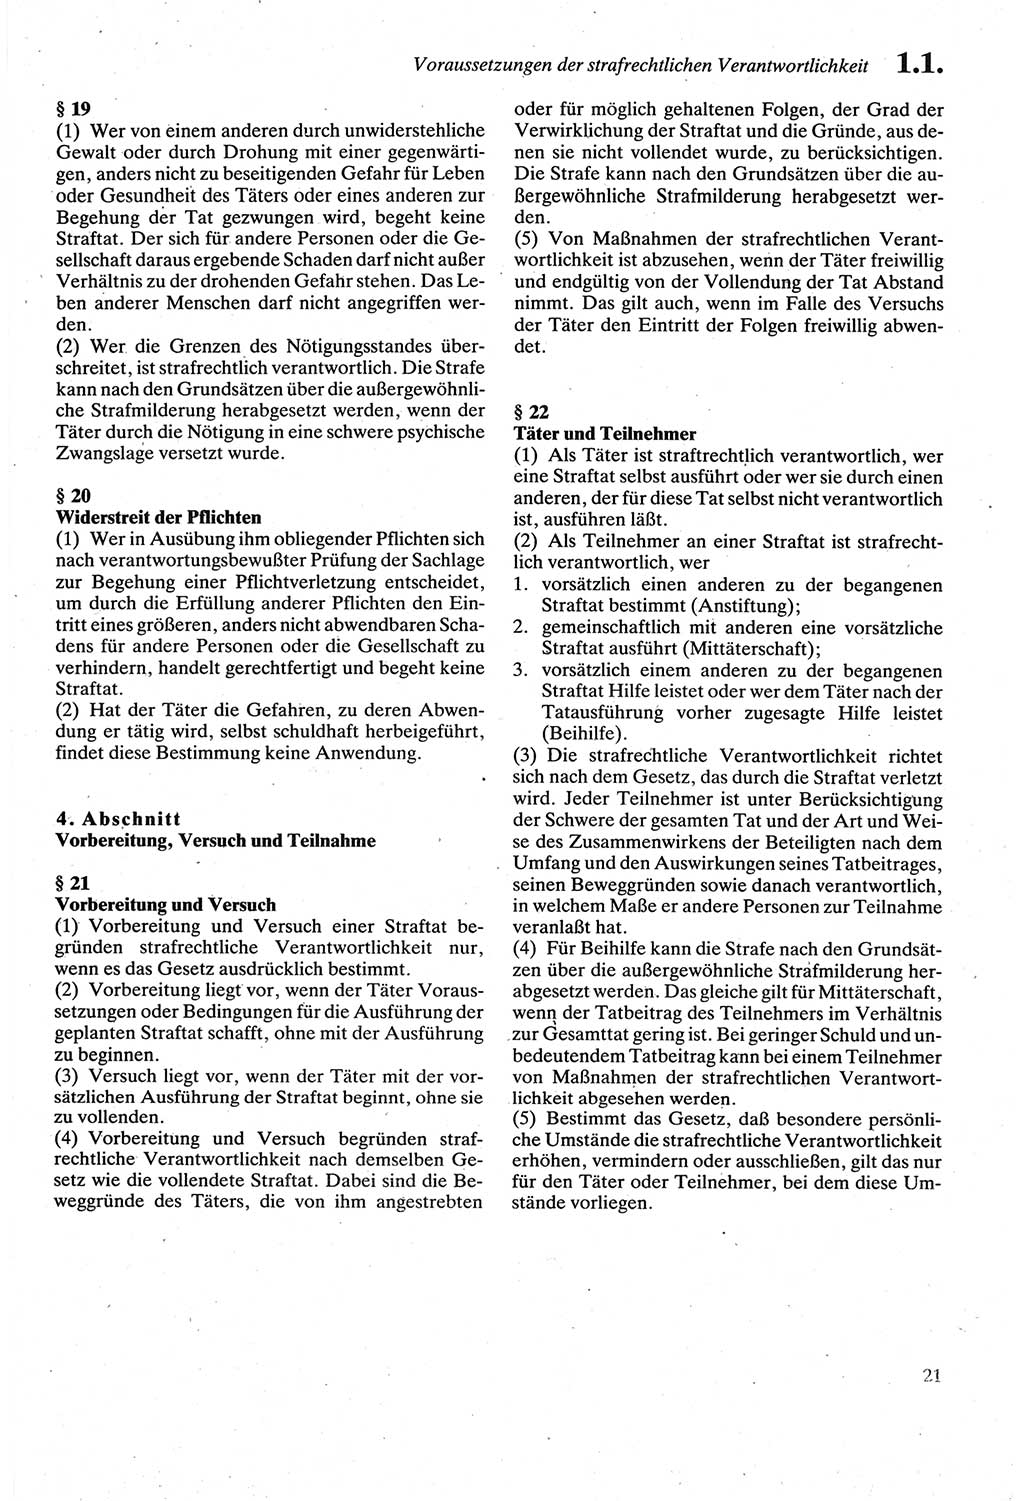 Strafgesetzbuch (StGB) der Deutschen Demokratischen Republik (DDR) sowie angrenzende Gesetze und Bestimmungen 1979, Seite 21 (StGB DDR Ges. Best. 1979, S. 21)